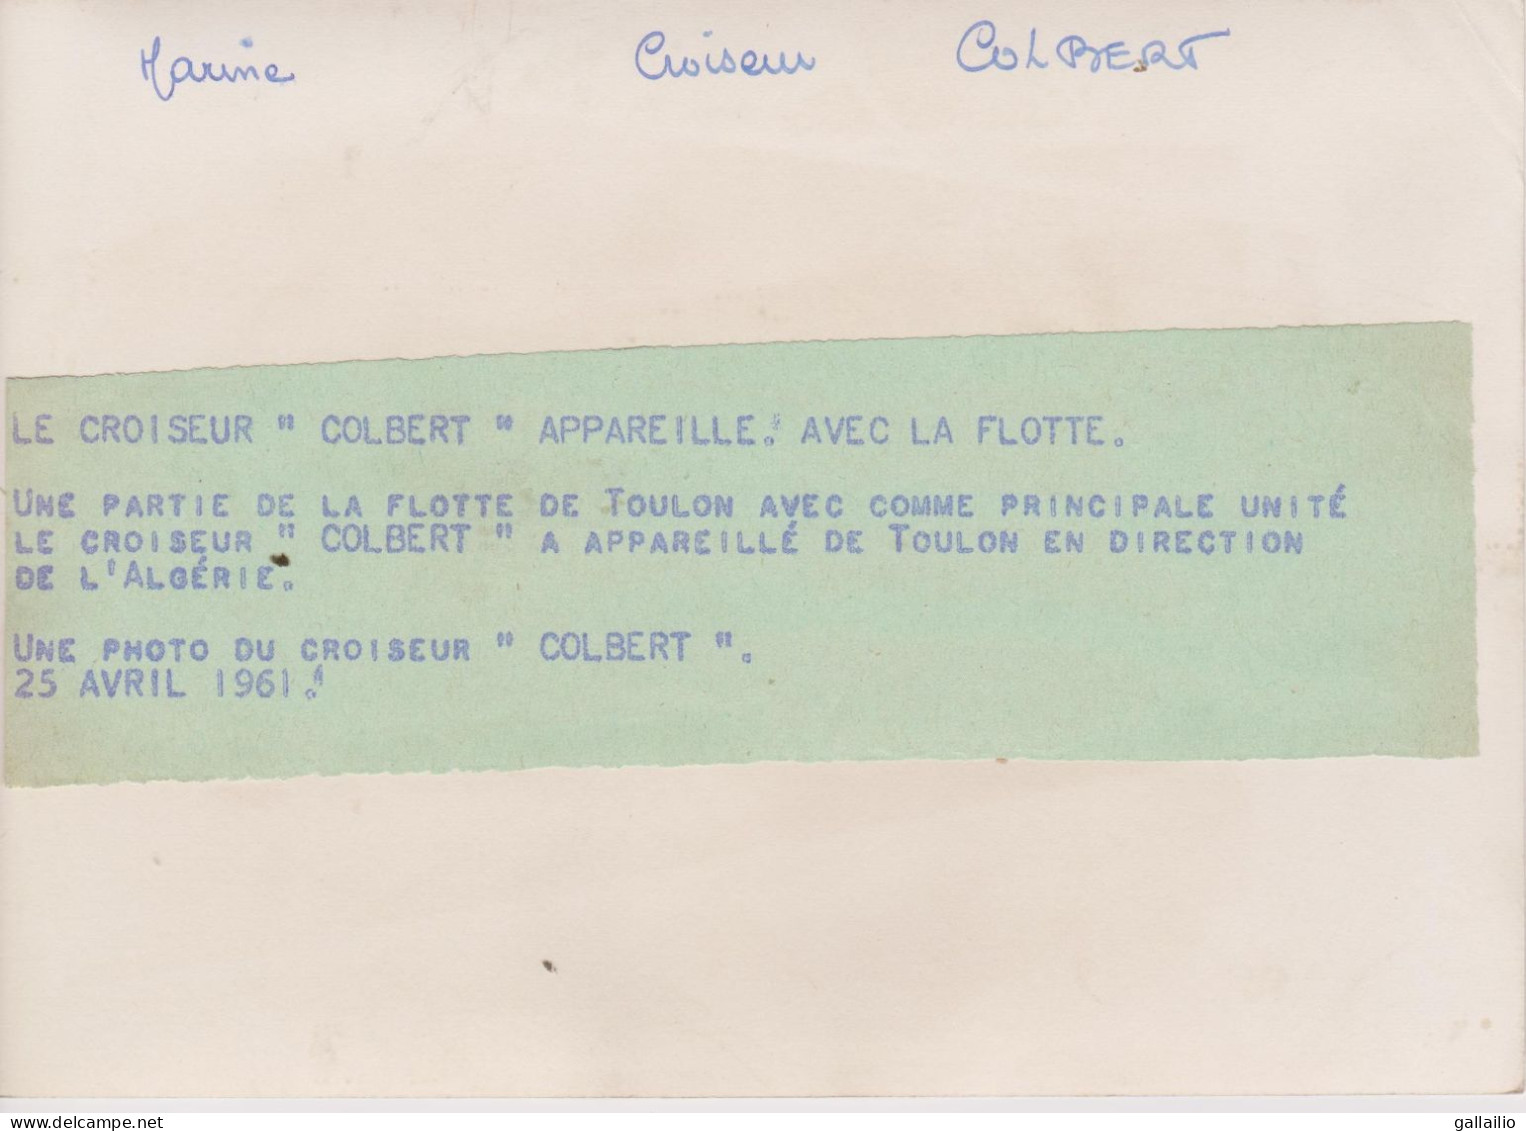 PHOTO PRESSE LE CROISEUR COLBERT EN DIRECTION DE L'ALGERIE AVRIL 1961 FORMAT 18 X 13   CMS - Bateaux